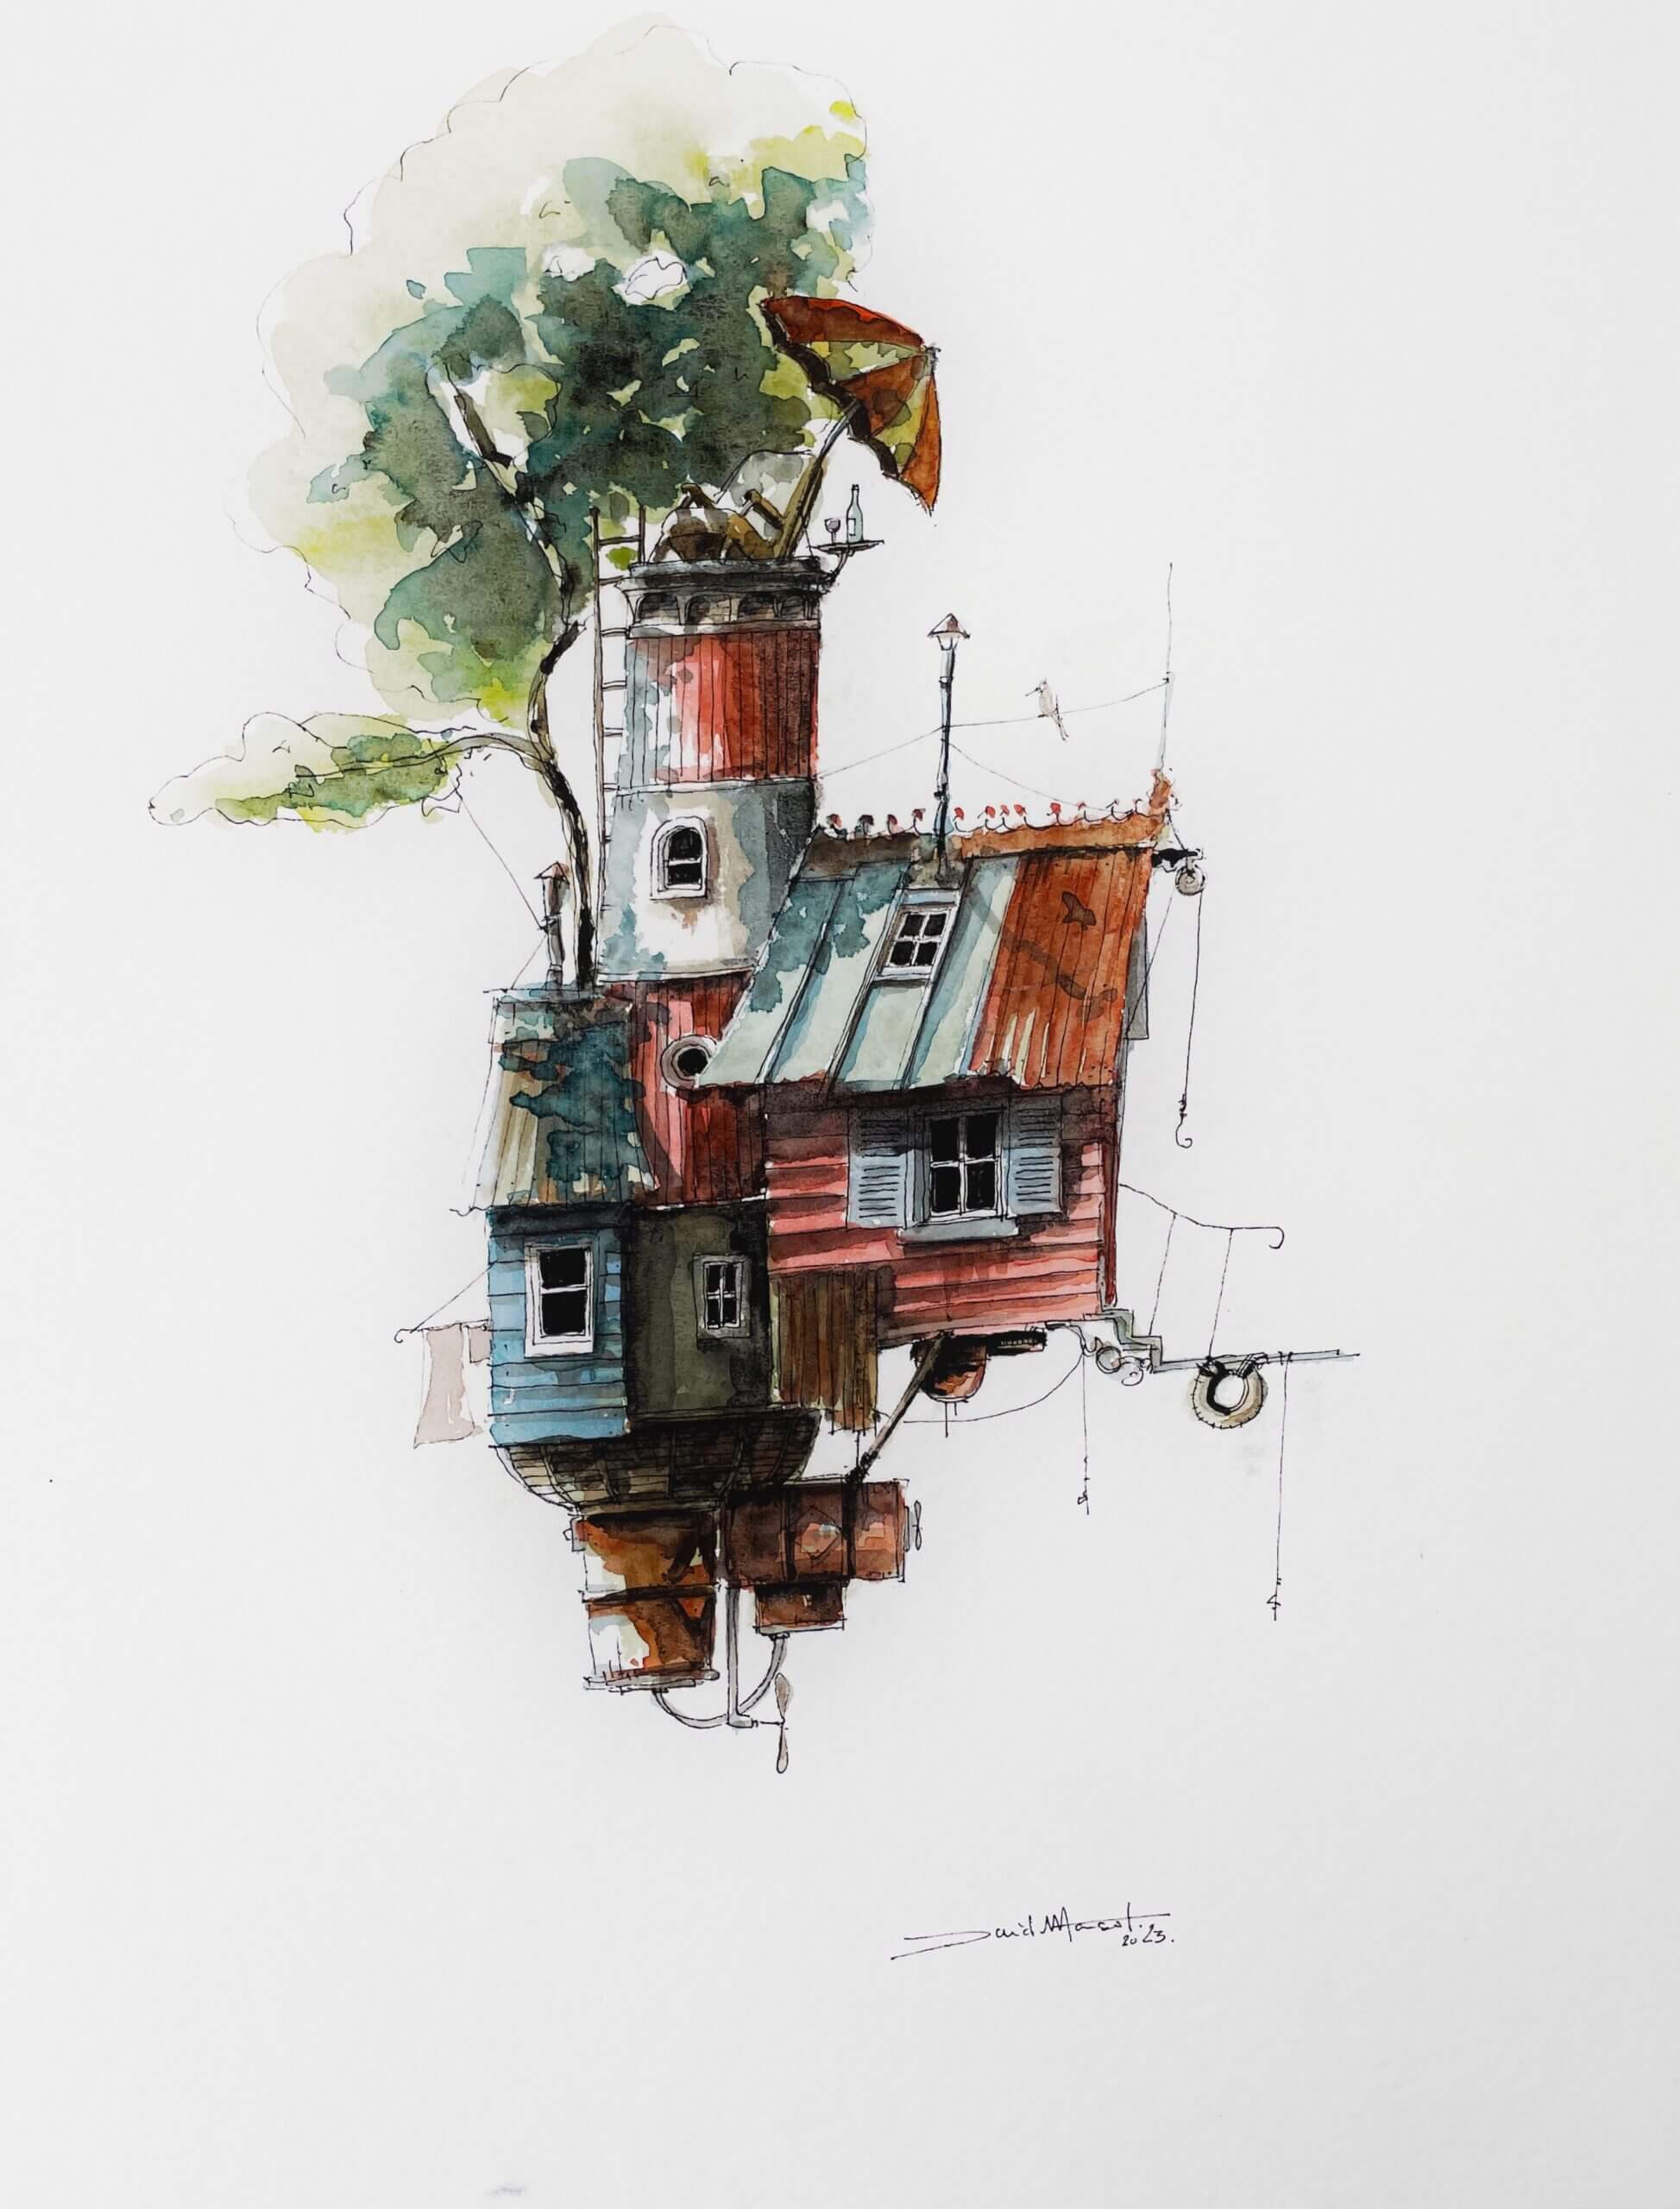 Dessin encre et aquarelle de l'artiste cabaniste David Mansot d'une cabane dans les arbres